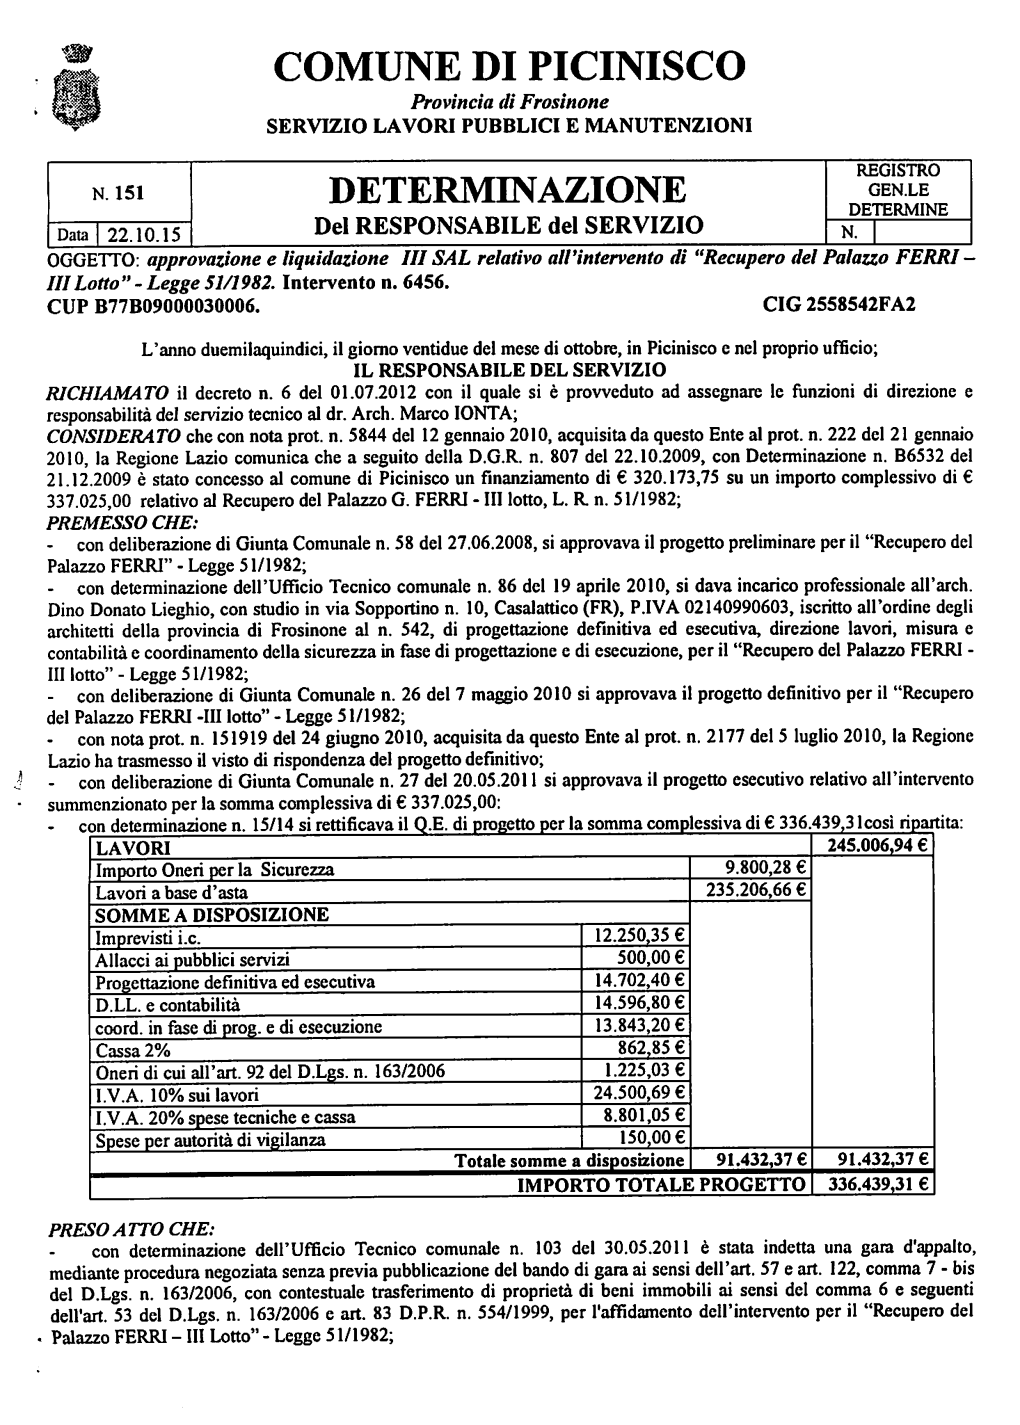 DETERMINAZIONE GEN.LE DETERMINE Del RESPONSABILE Del SERVIZIO Data 22.10.15 N